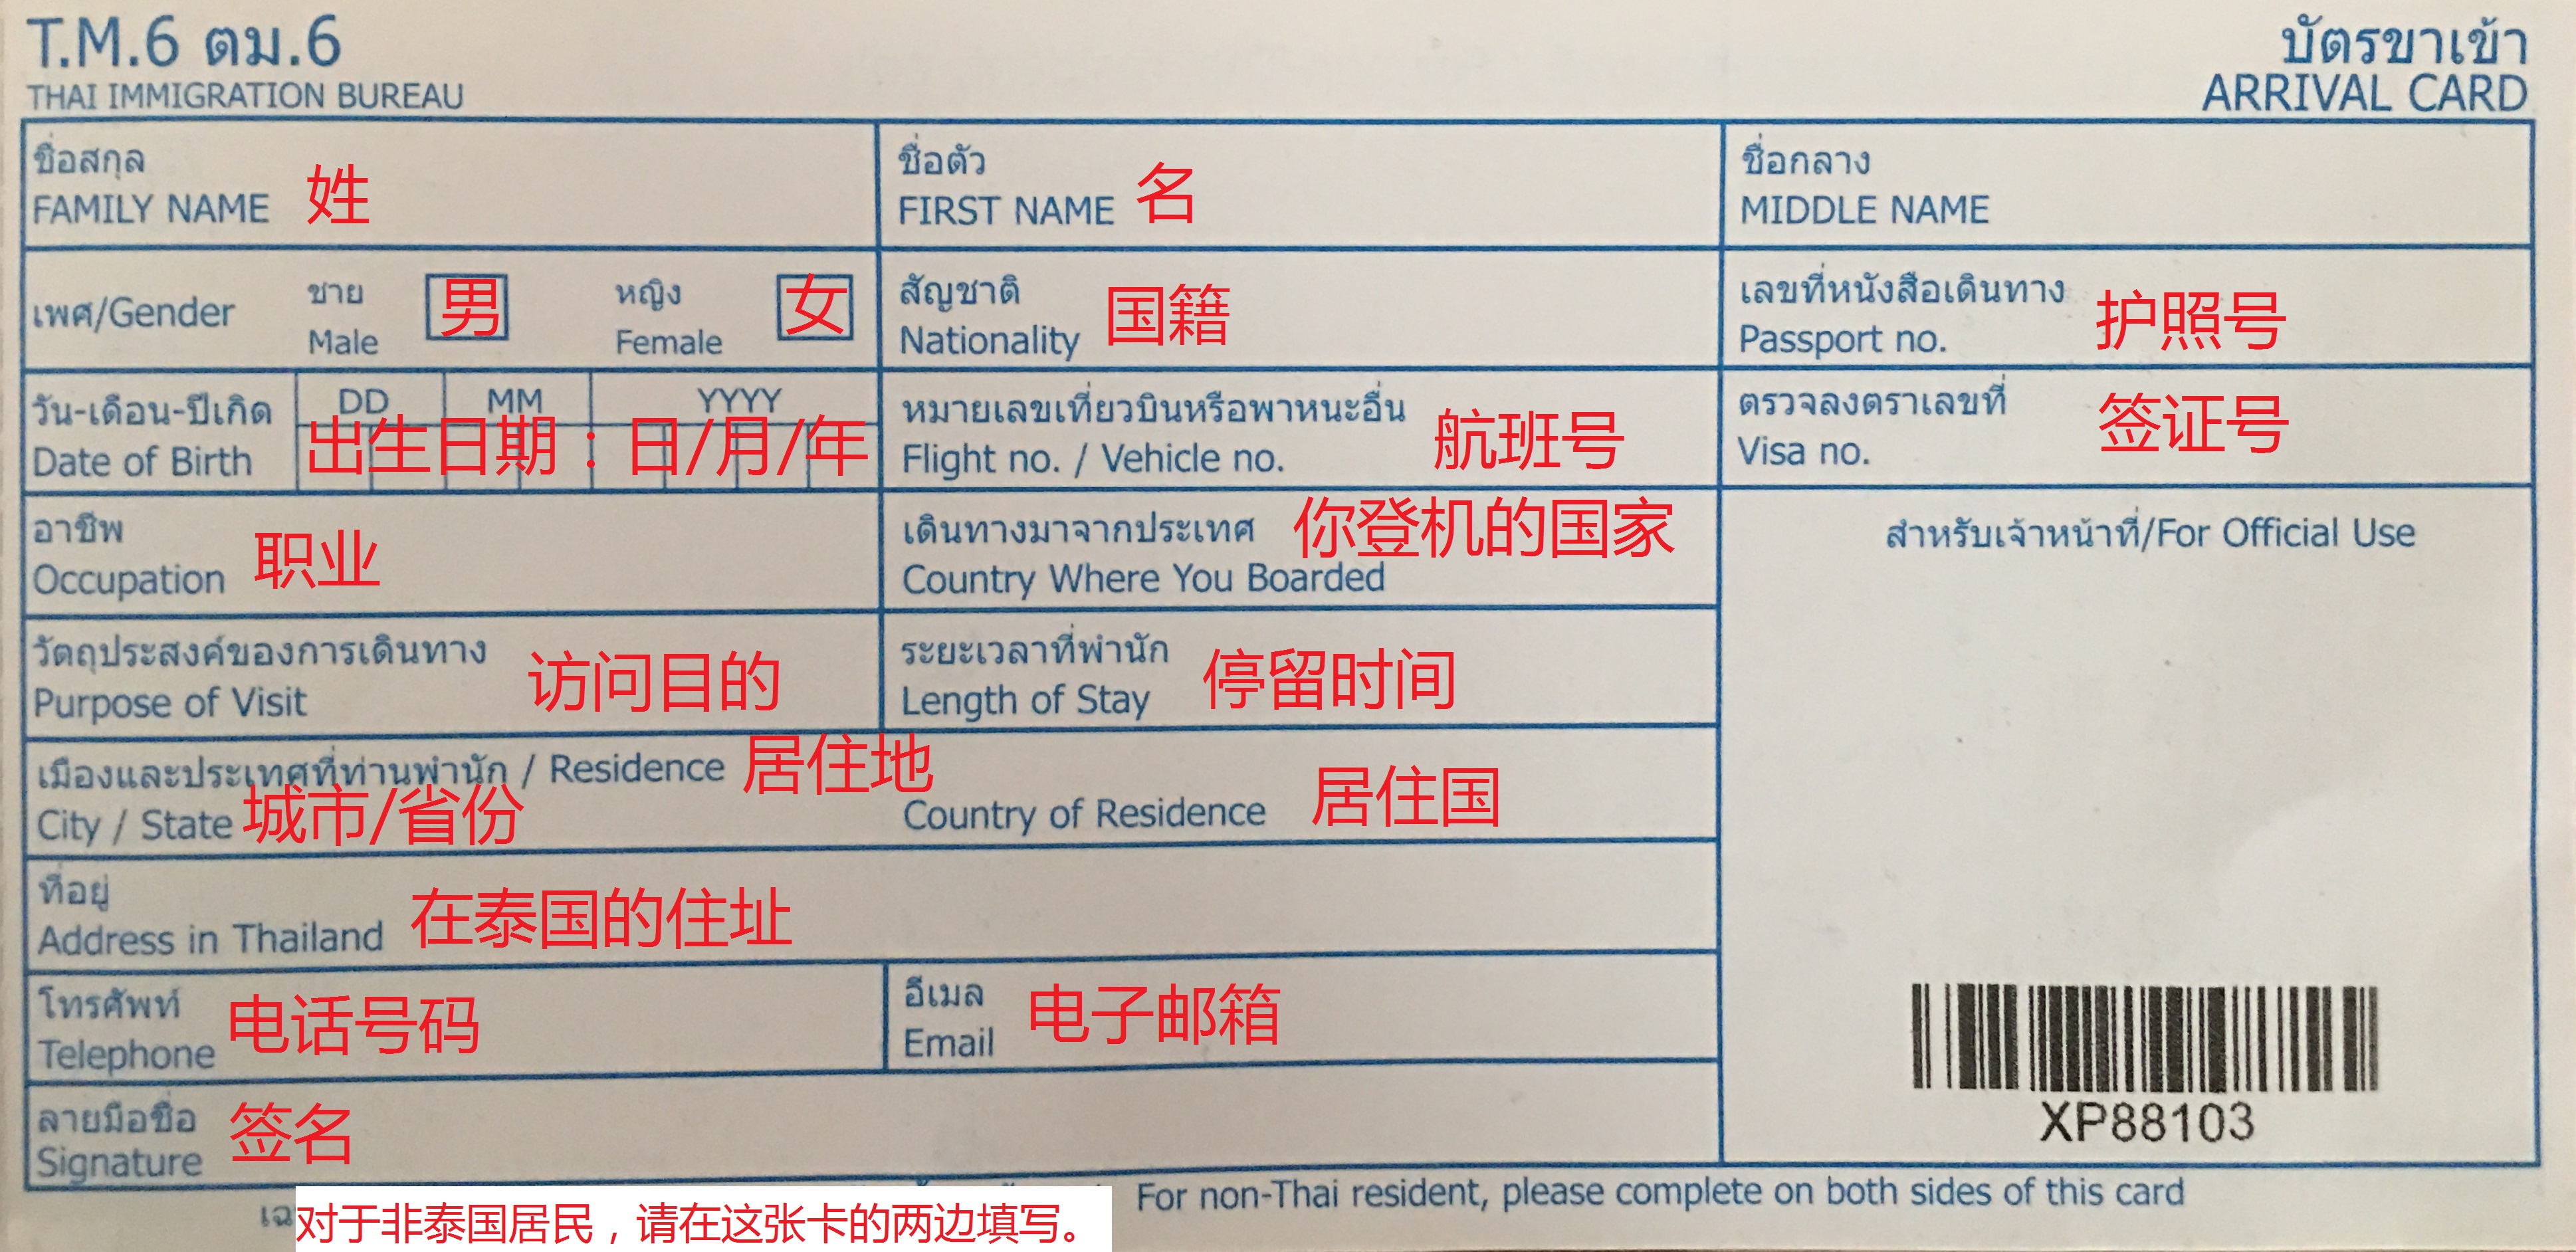 泰国入境单怎么填,用英文还是中文